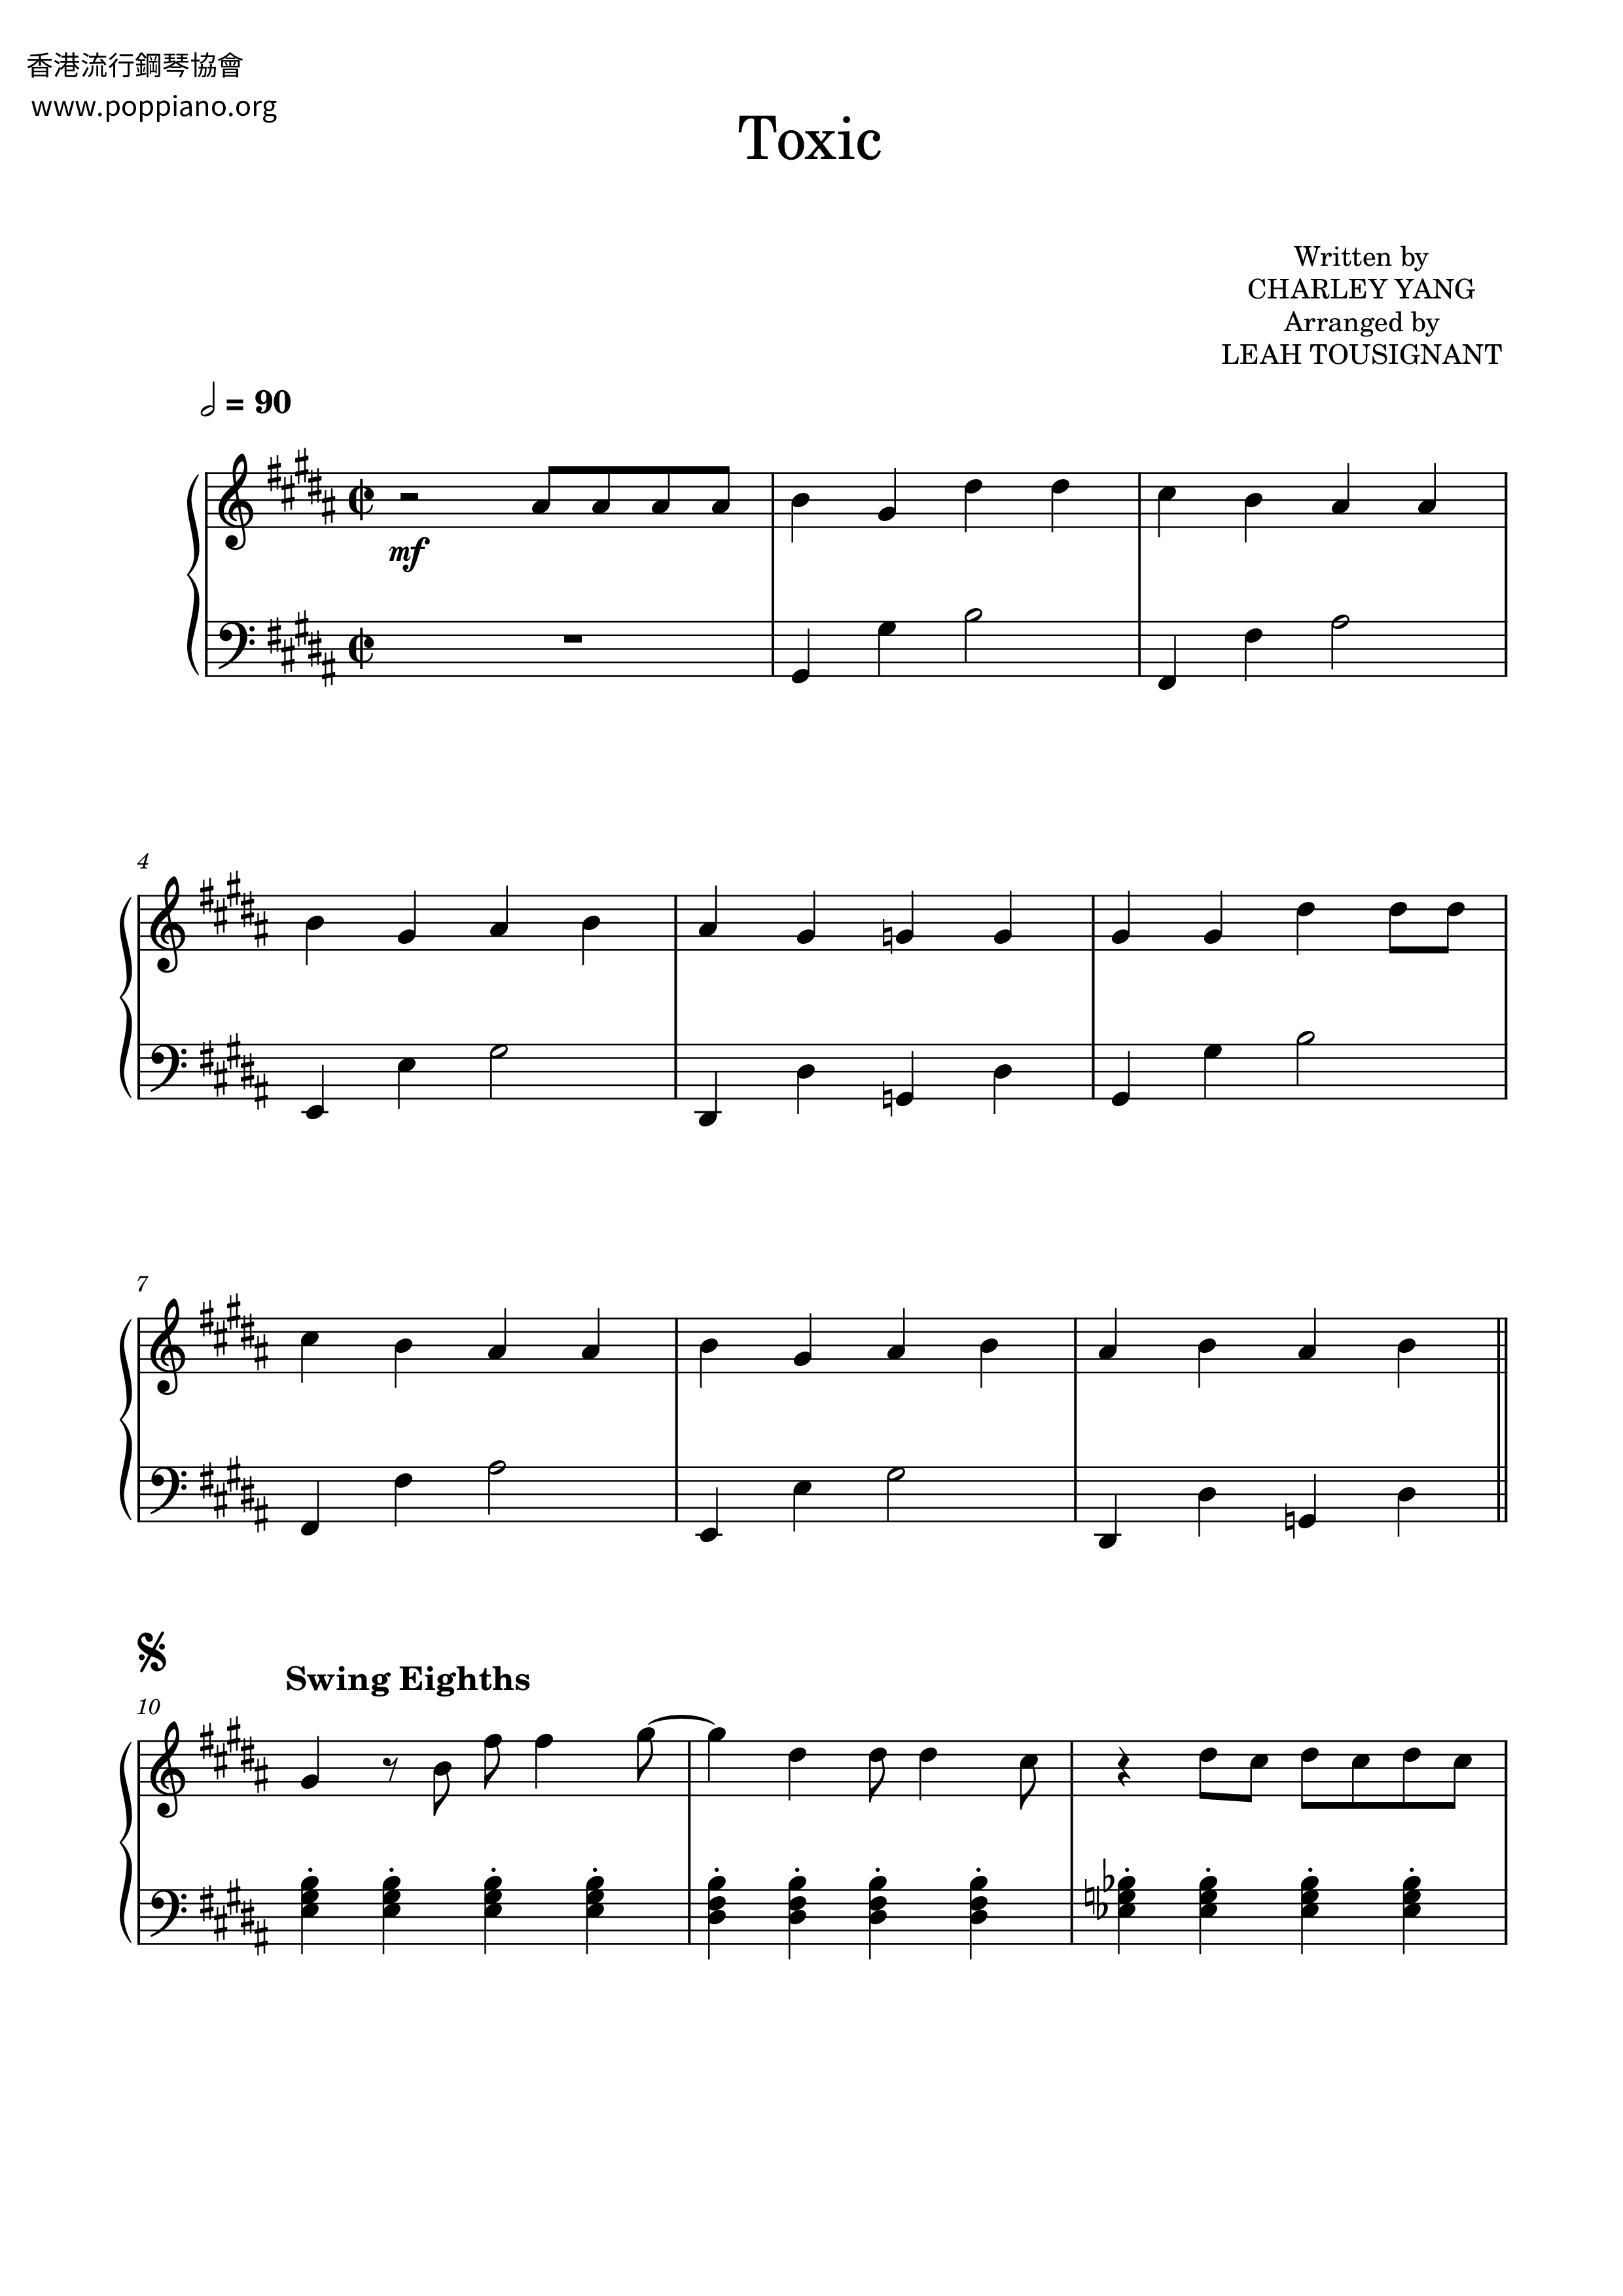 ☆ BoyWithUke-Understand Sheet Music pdf, - Free Score Download ☆